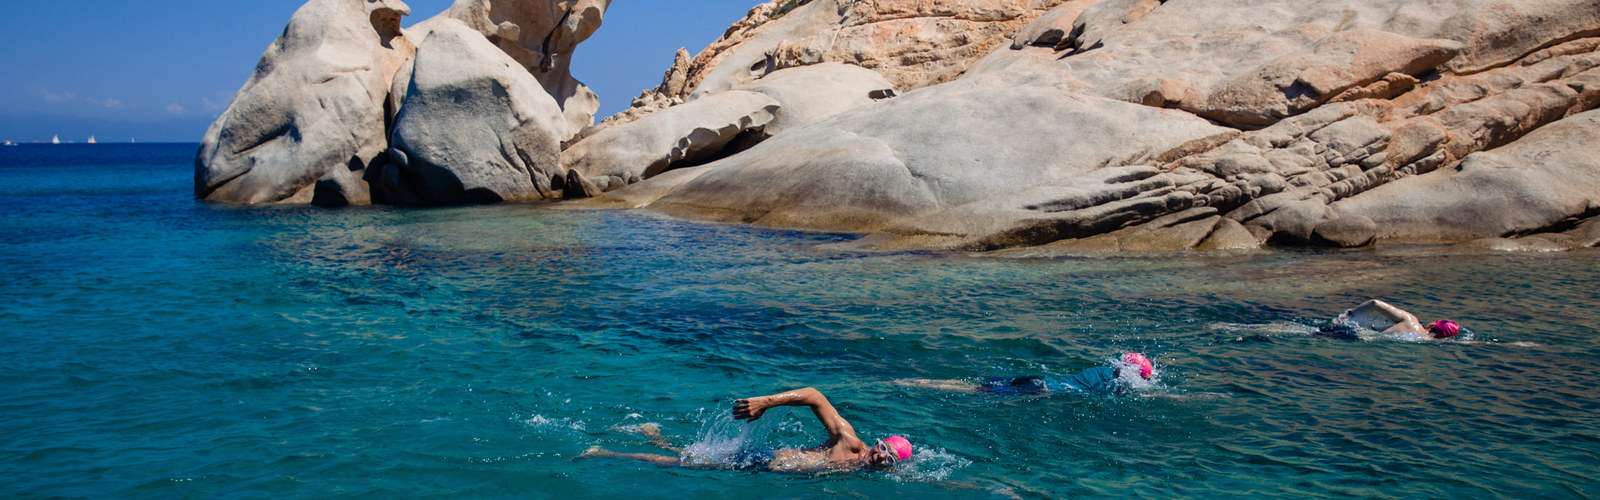 SwimTrek-Sardinia-010.jpg